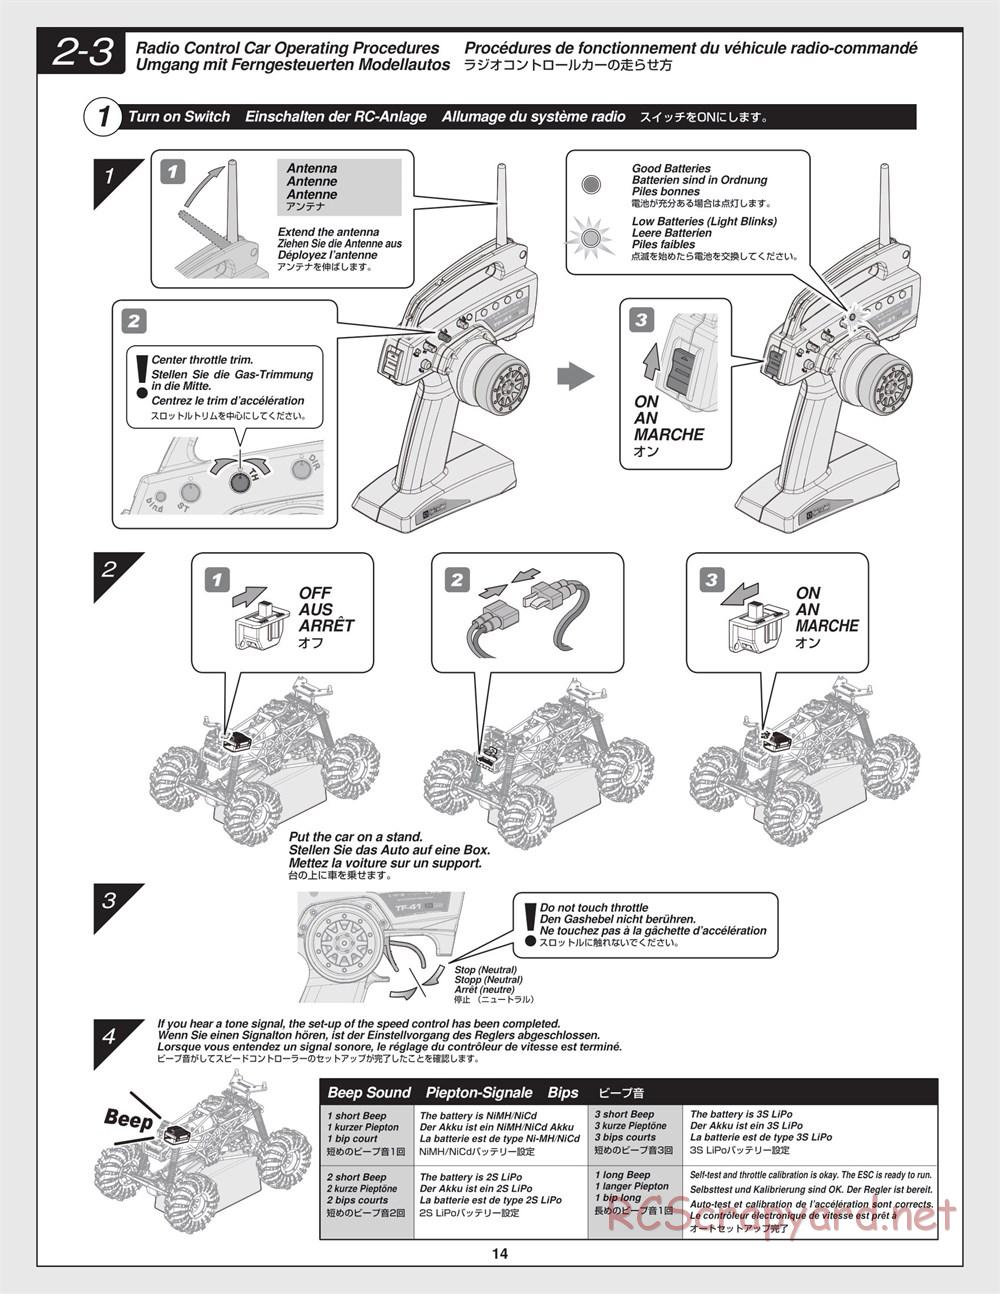 HPI - Crawler King - Manual - Page 14